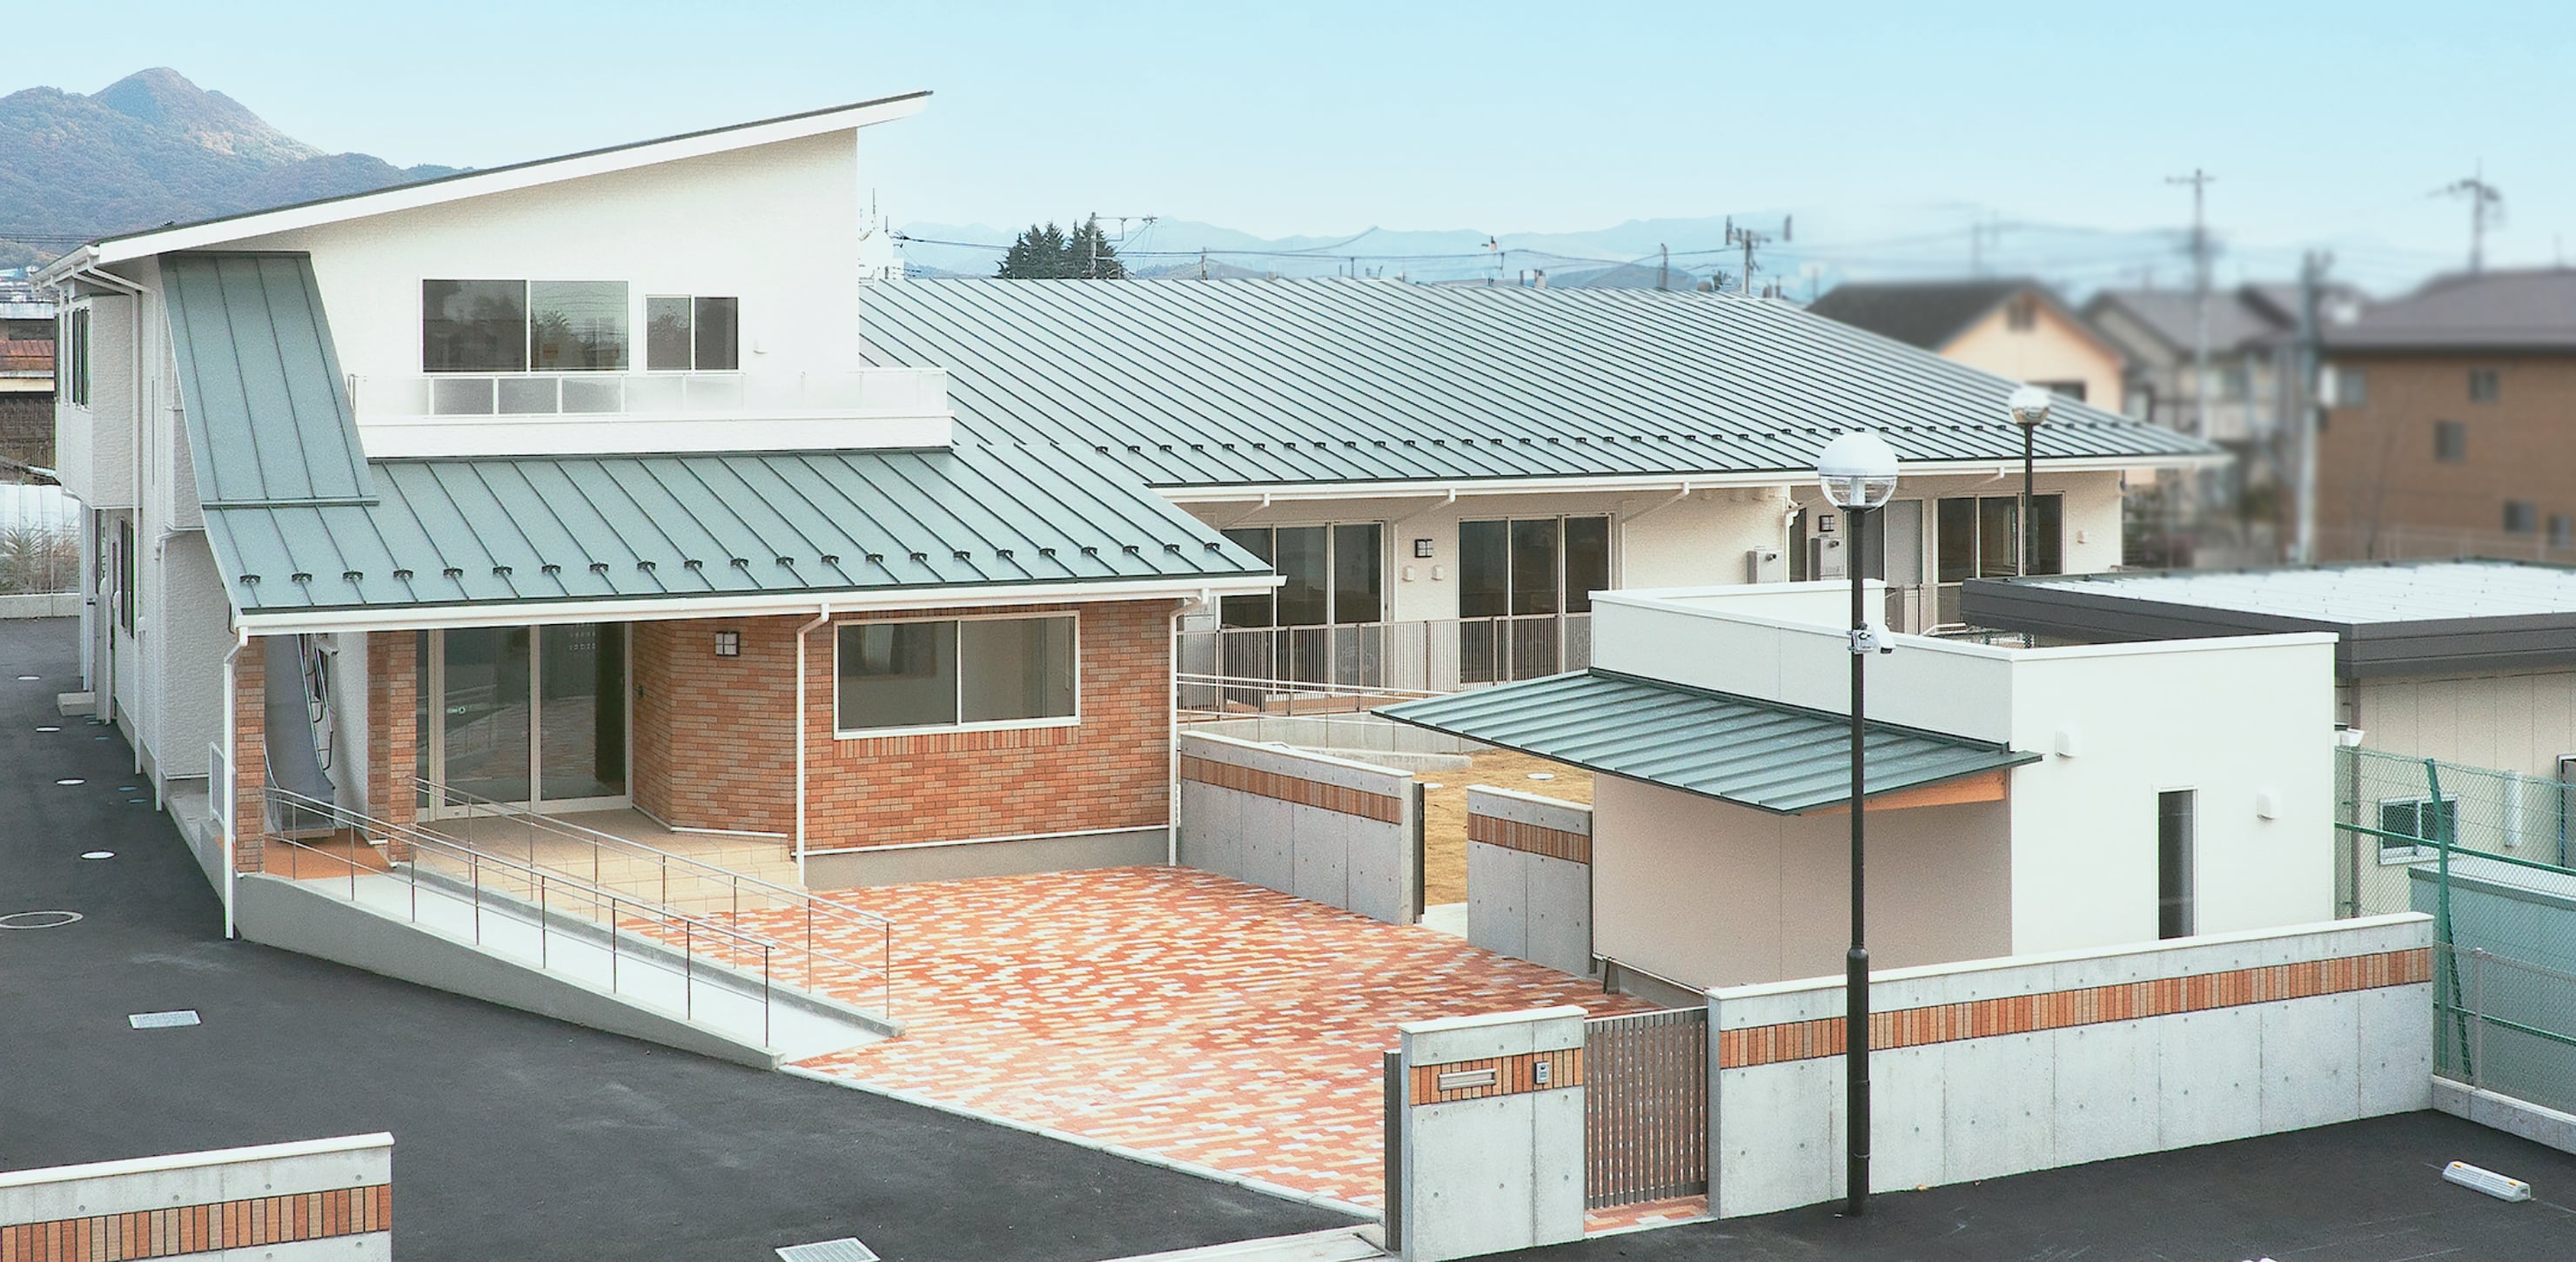 桐育乳児園は屋根が緑で壁が白色の園舎です。駐車スペースも複数あります。